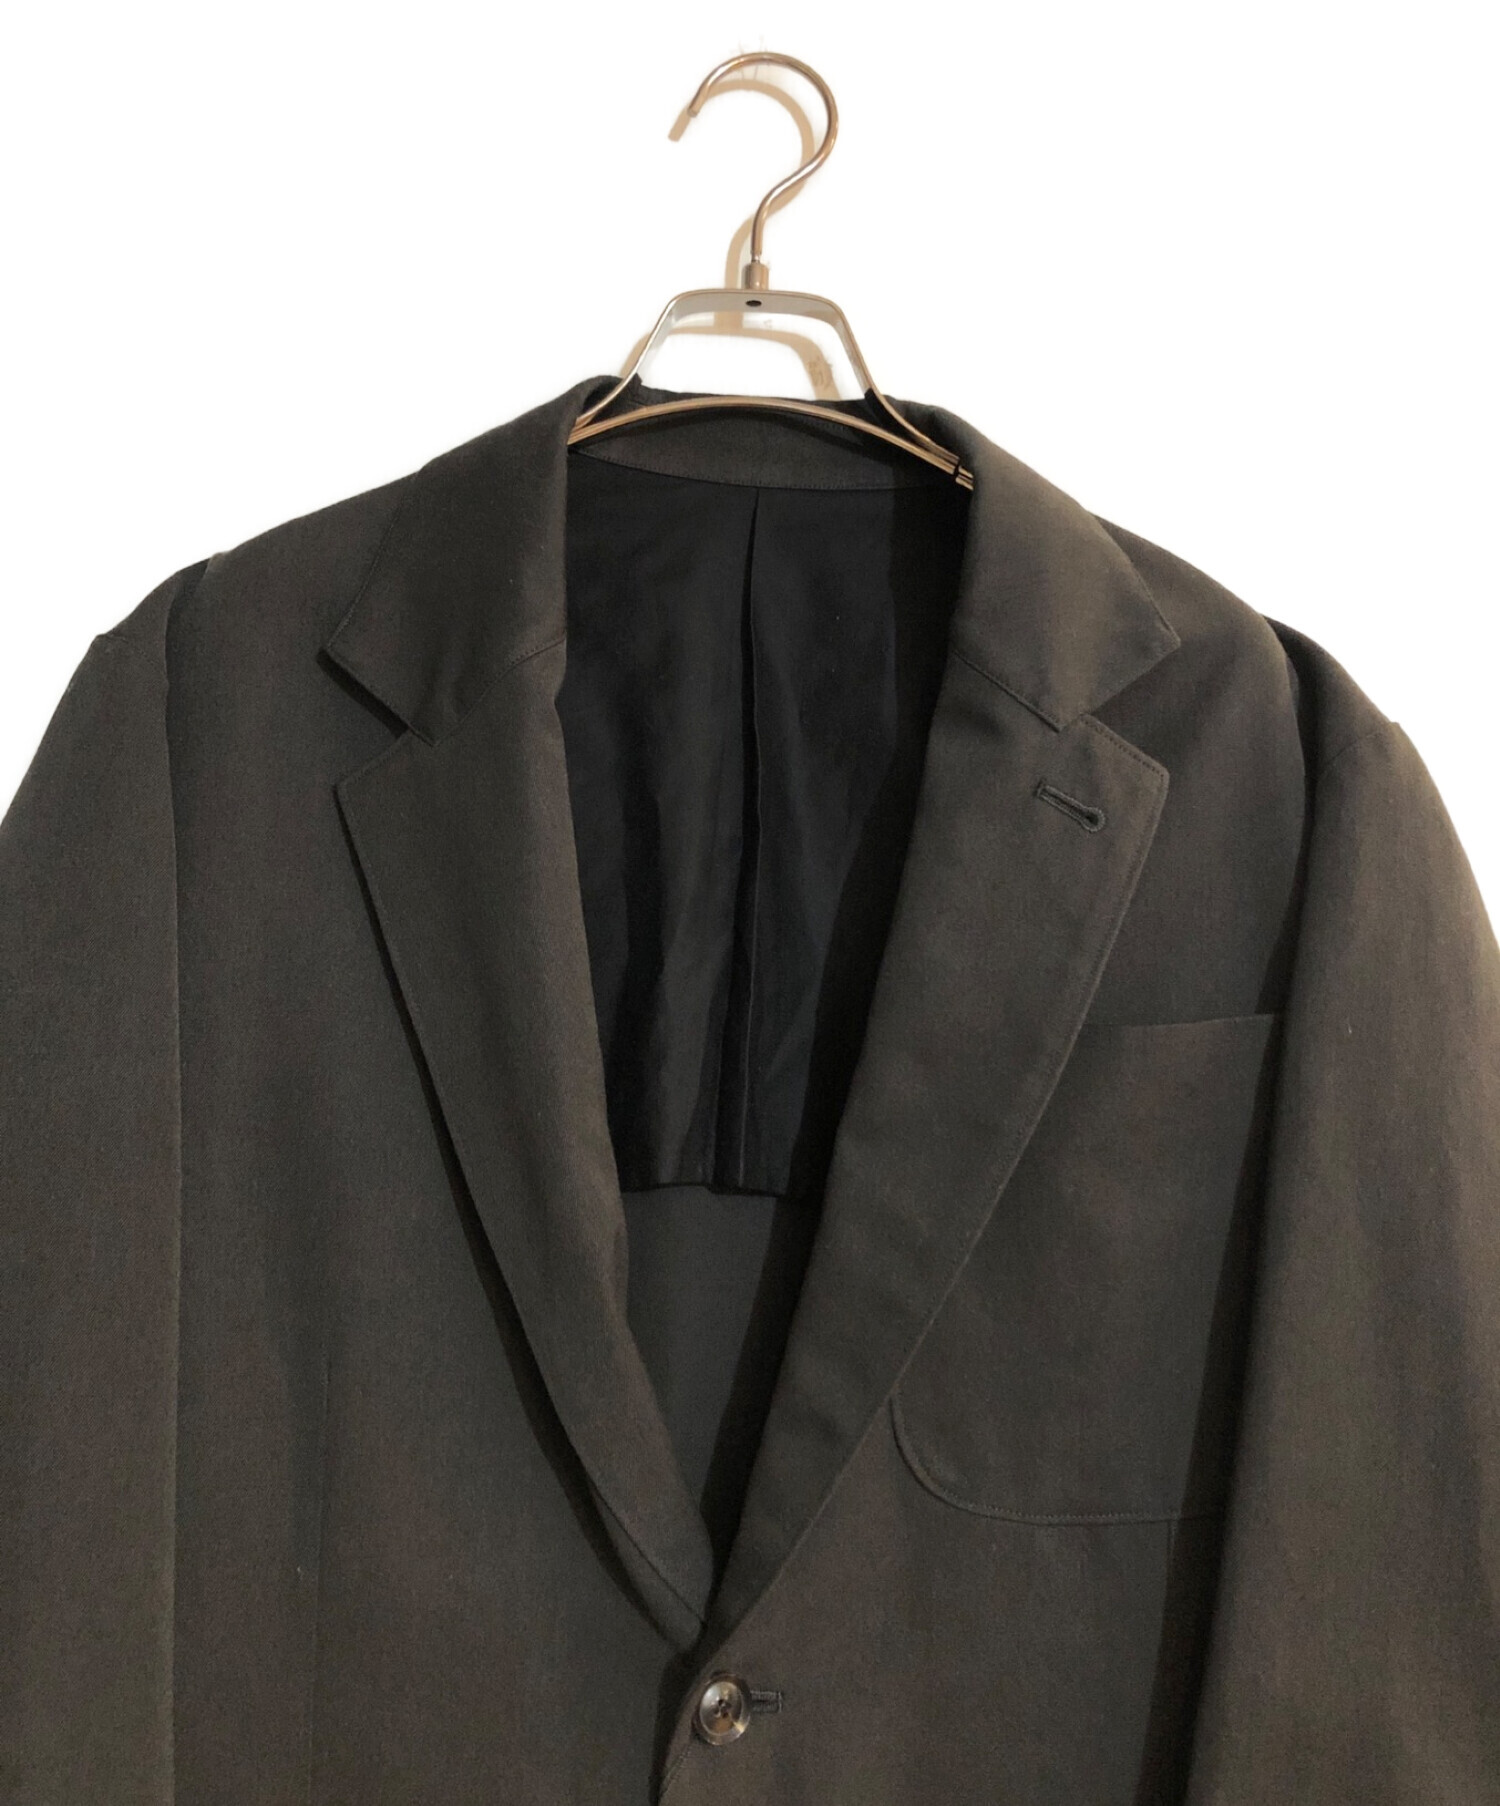 RAKINES (ラキネス) Post-work Twill / Days jacket ブラック サイズ:2 未使用品